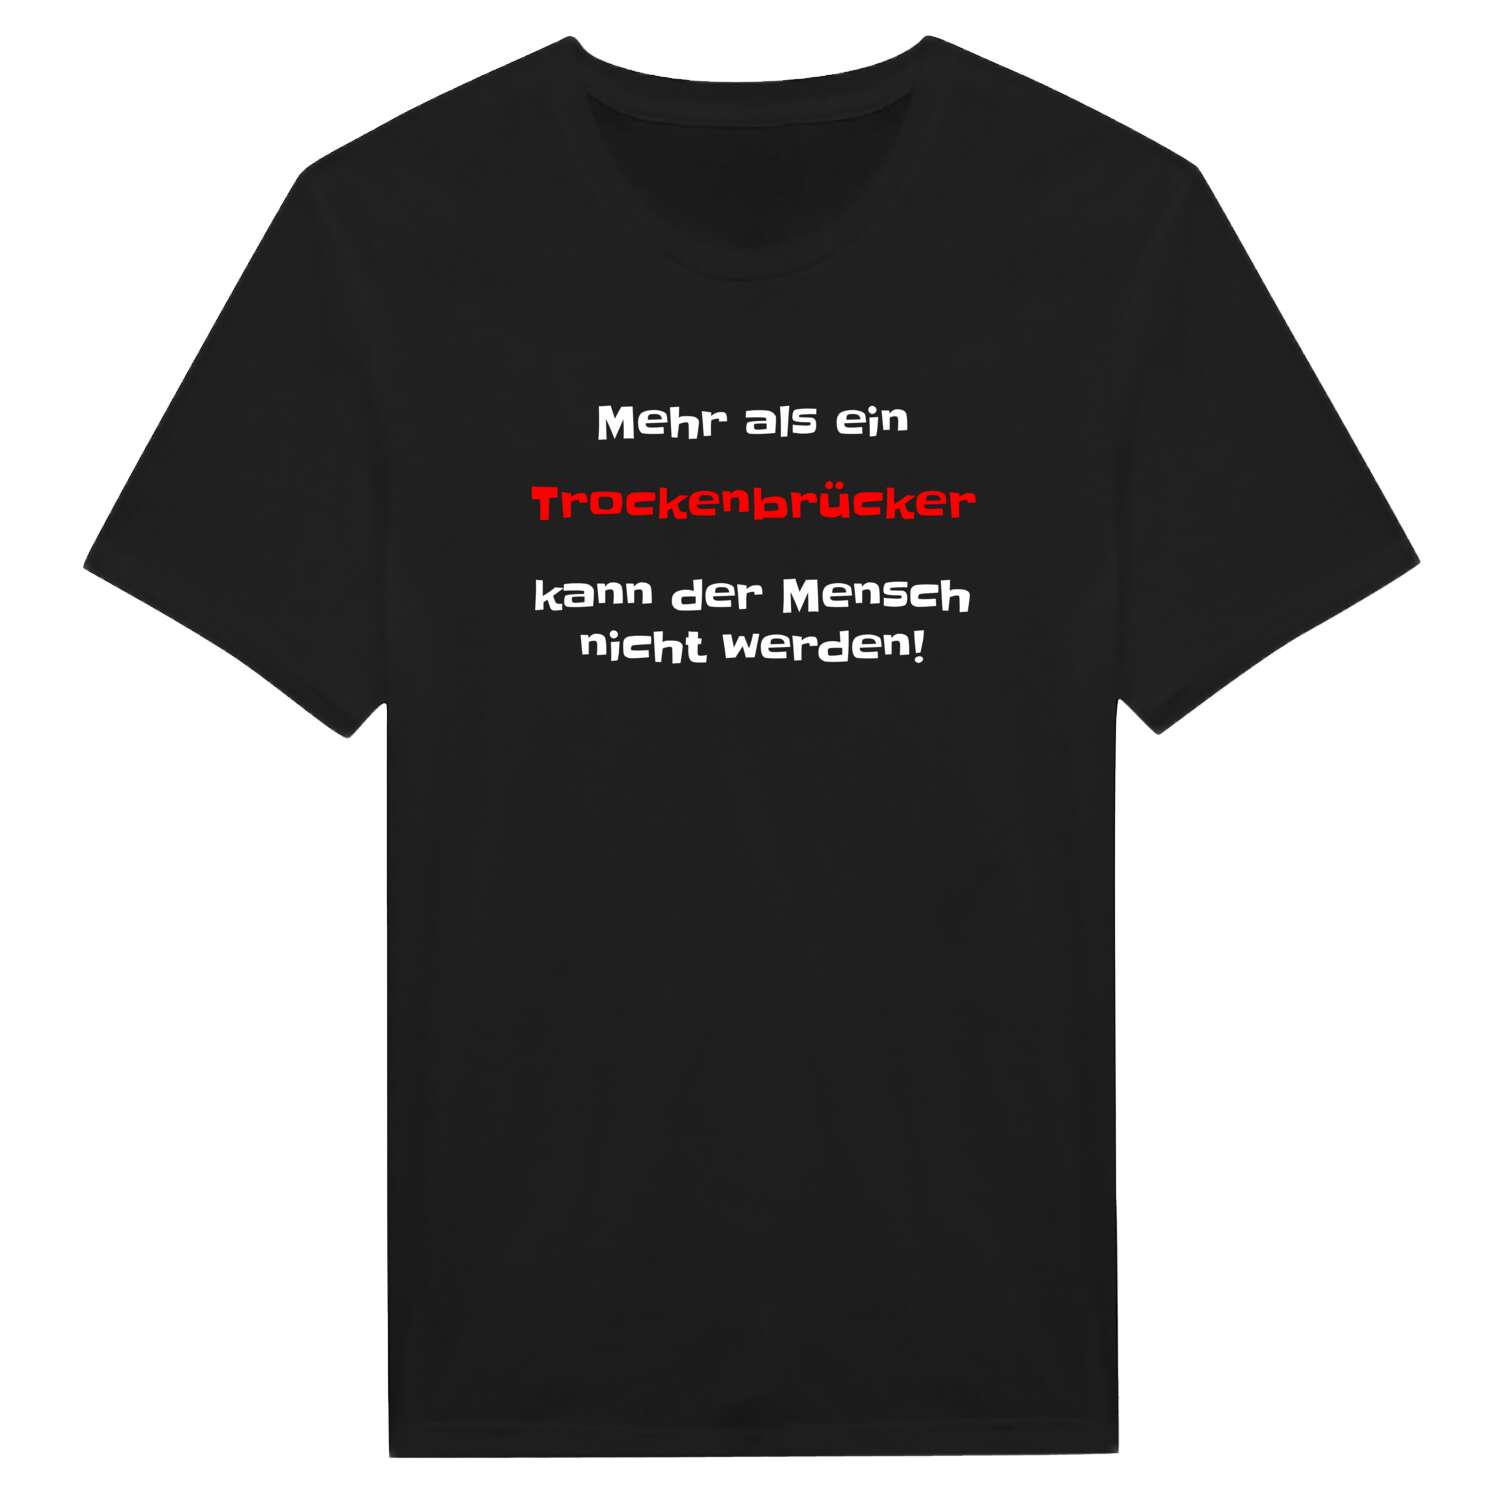 Trockenbrück T-Shirt »Mehr als ein«